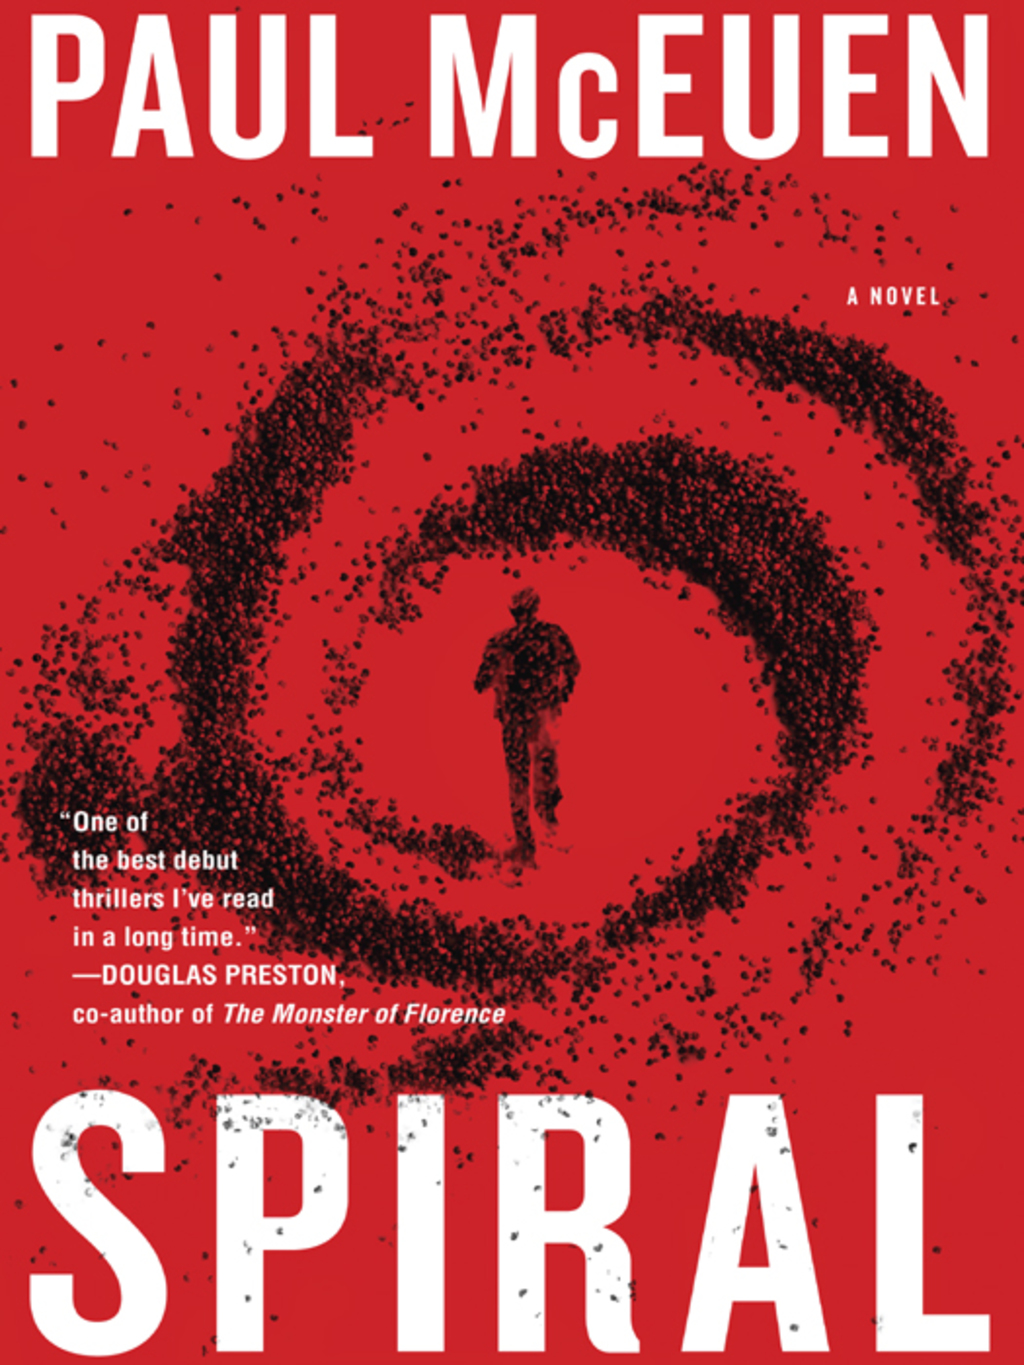 Spiral (eBook) - Paul McEuen,